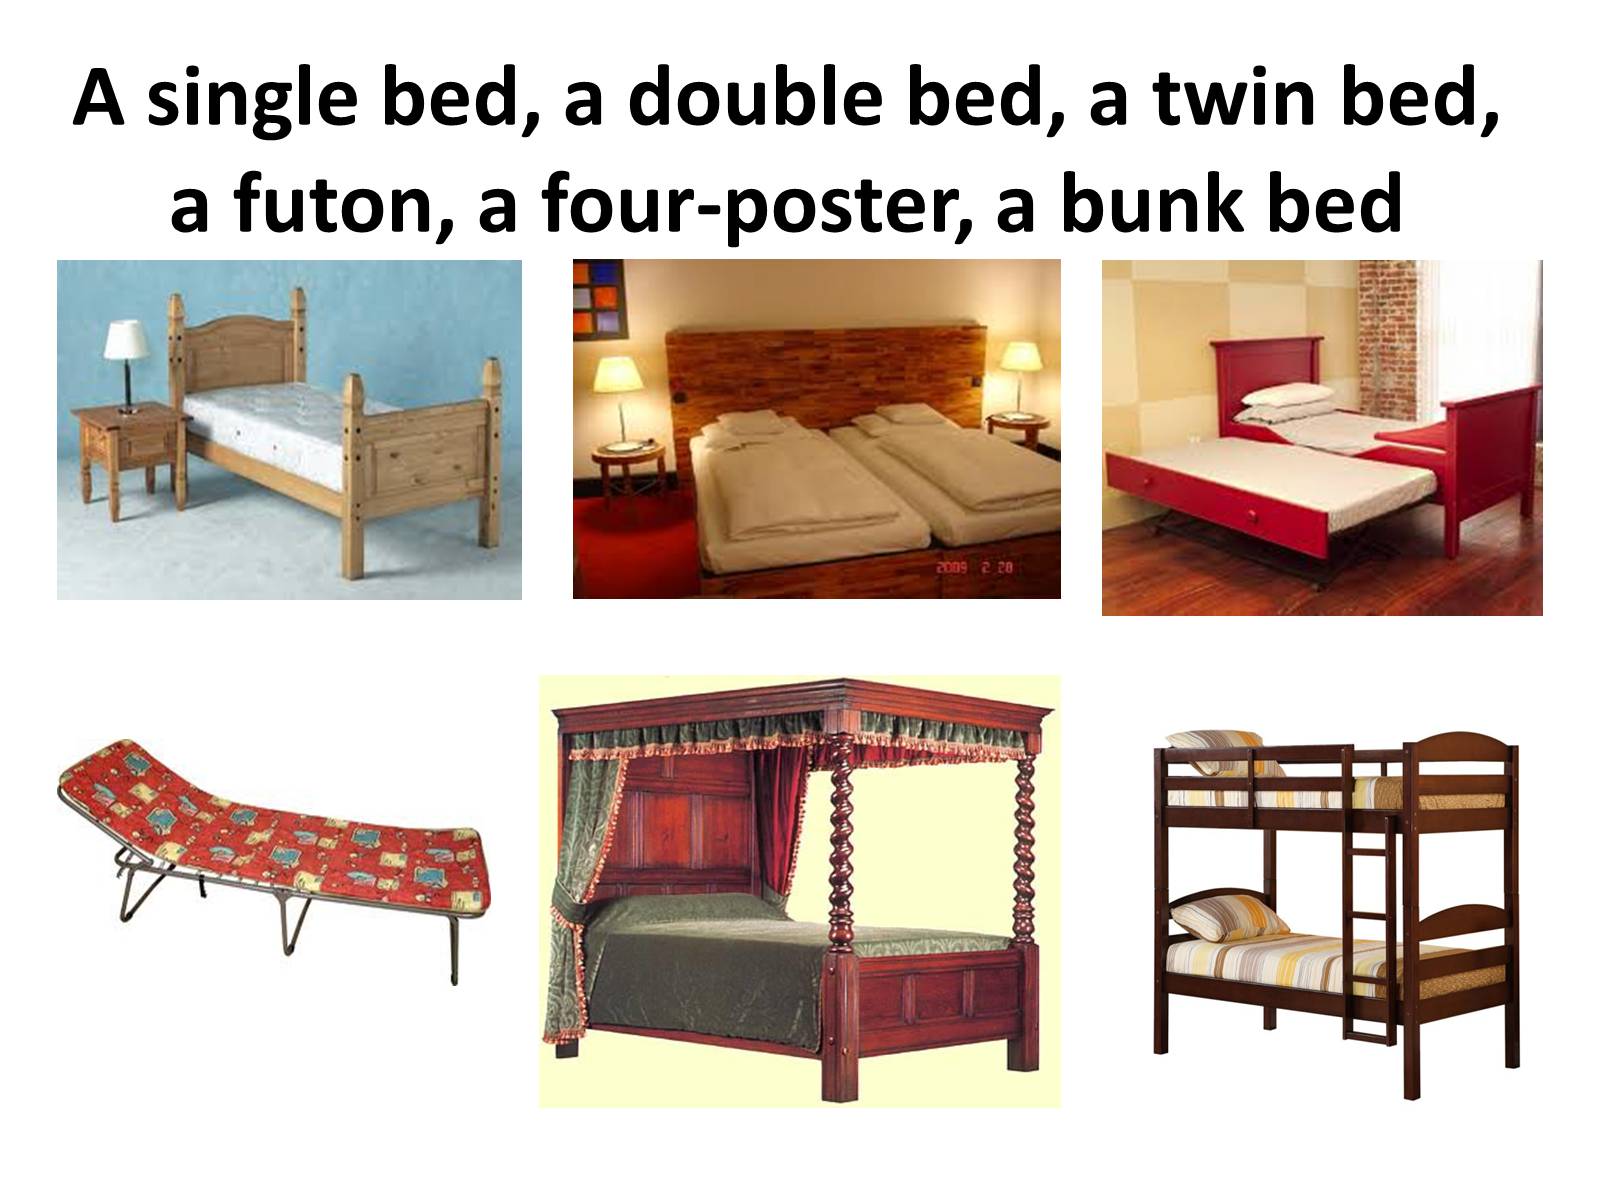 кровати twin и double